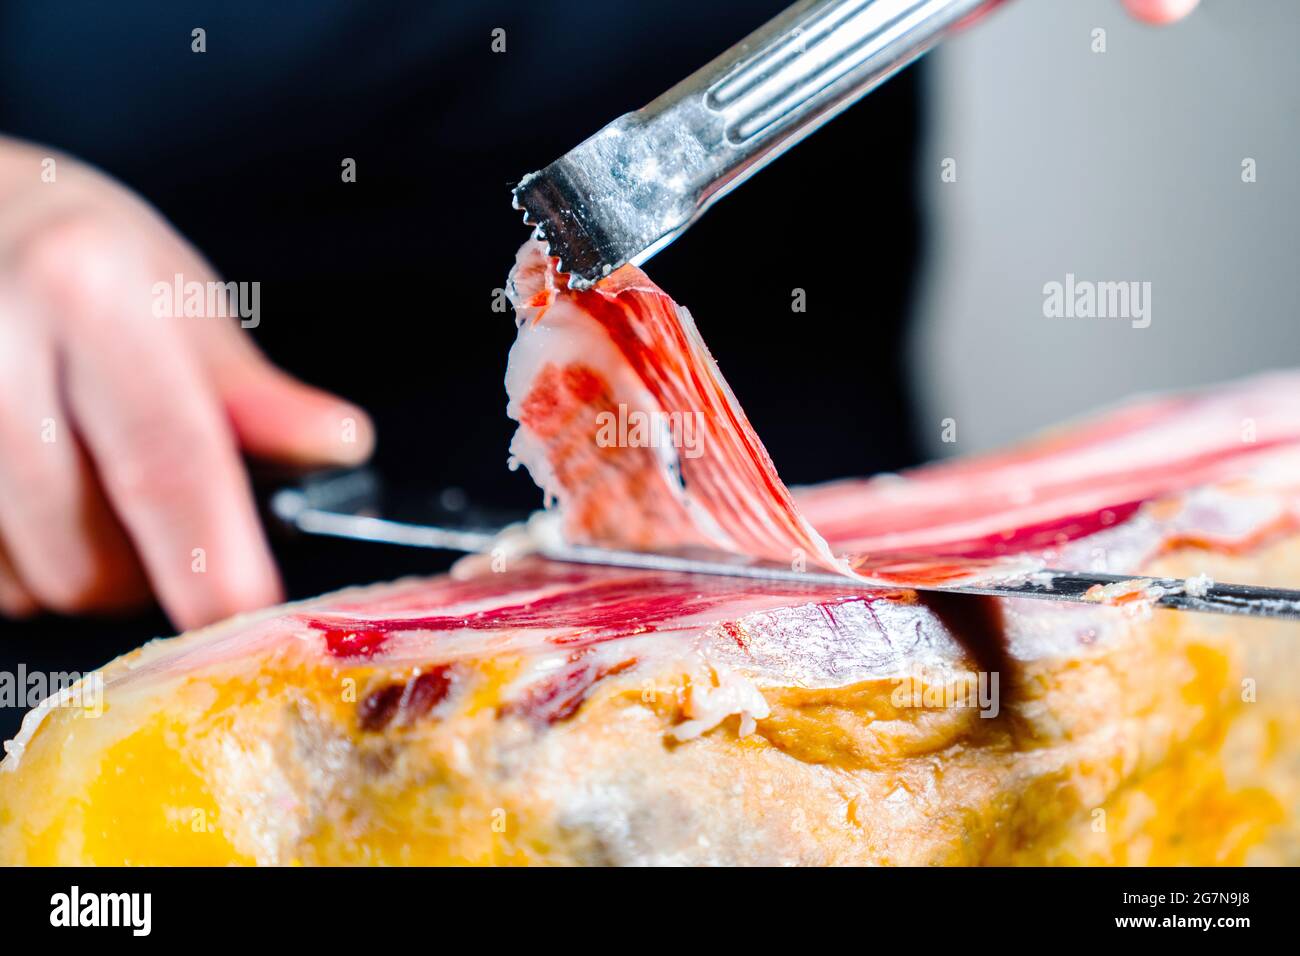 Personne anonyme coupant une jambe de jambon ibérique à 100% et tenant avec des brucelles une tranche appétissante et délicieuse de jambon ibérique. Jambon ibérique nourri à l'Acorn. Type Banque D'Images